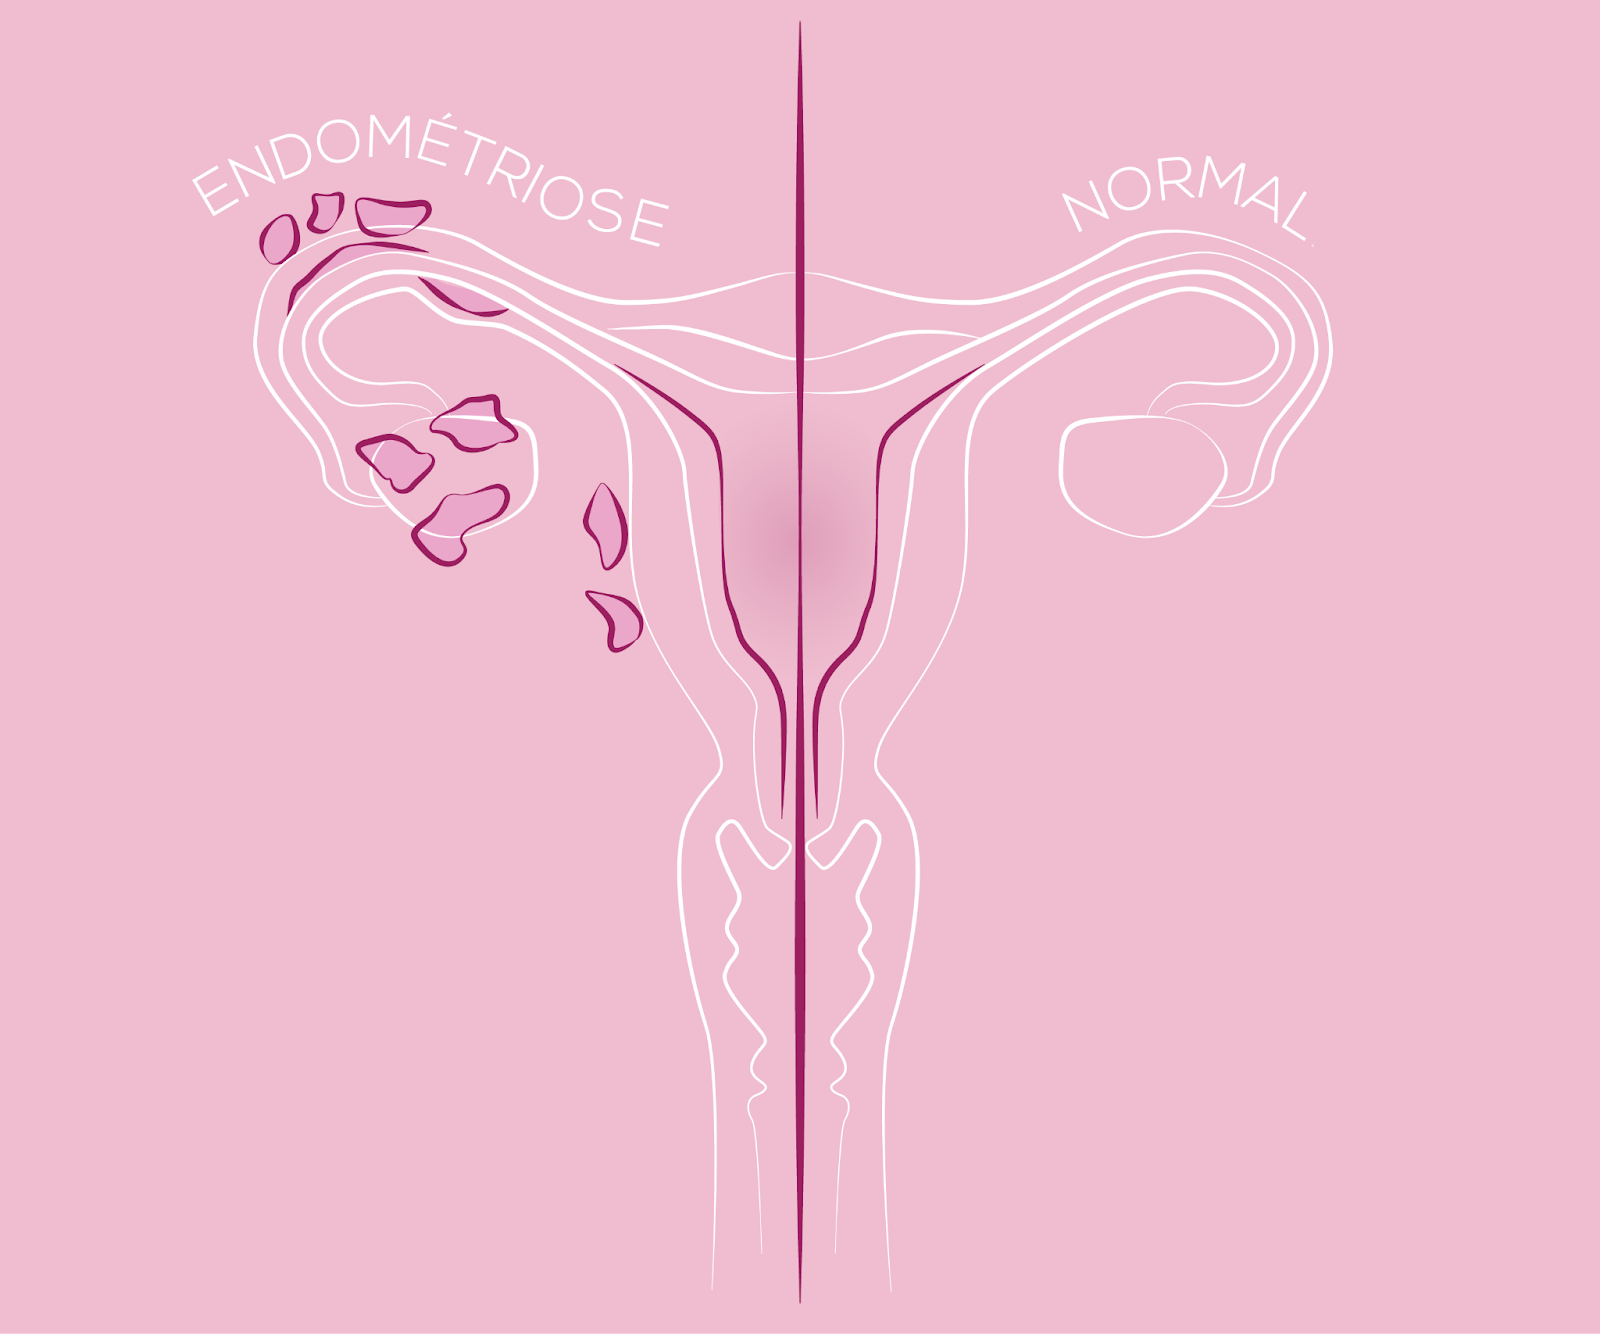 Différences entre un utérus normal et un utérus atteint d'endométriose, comparés côte à côte.